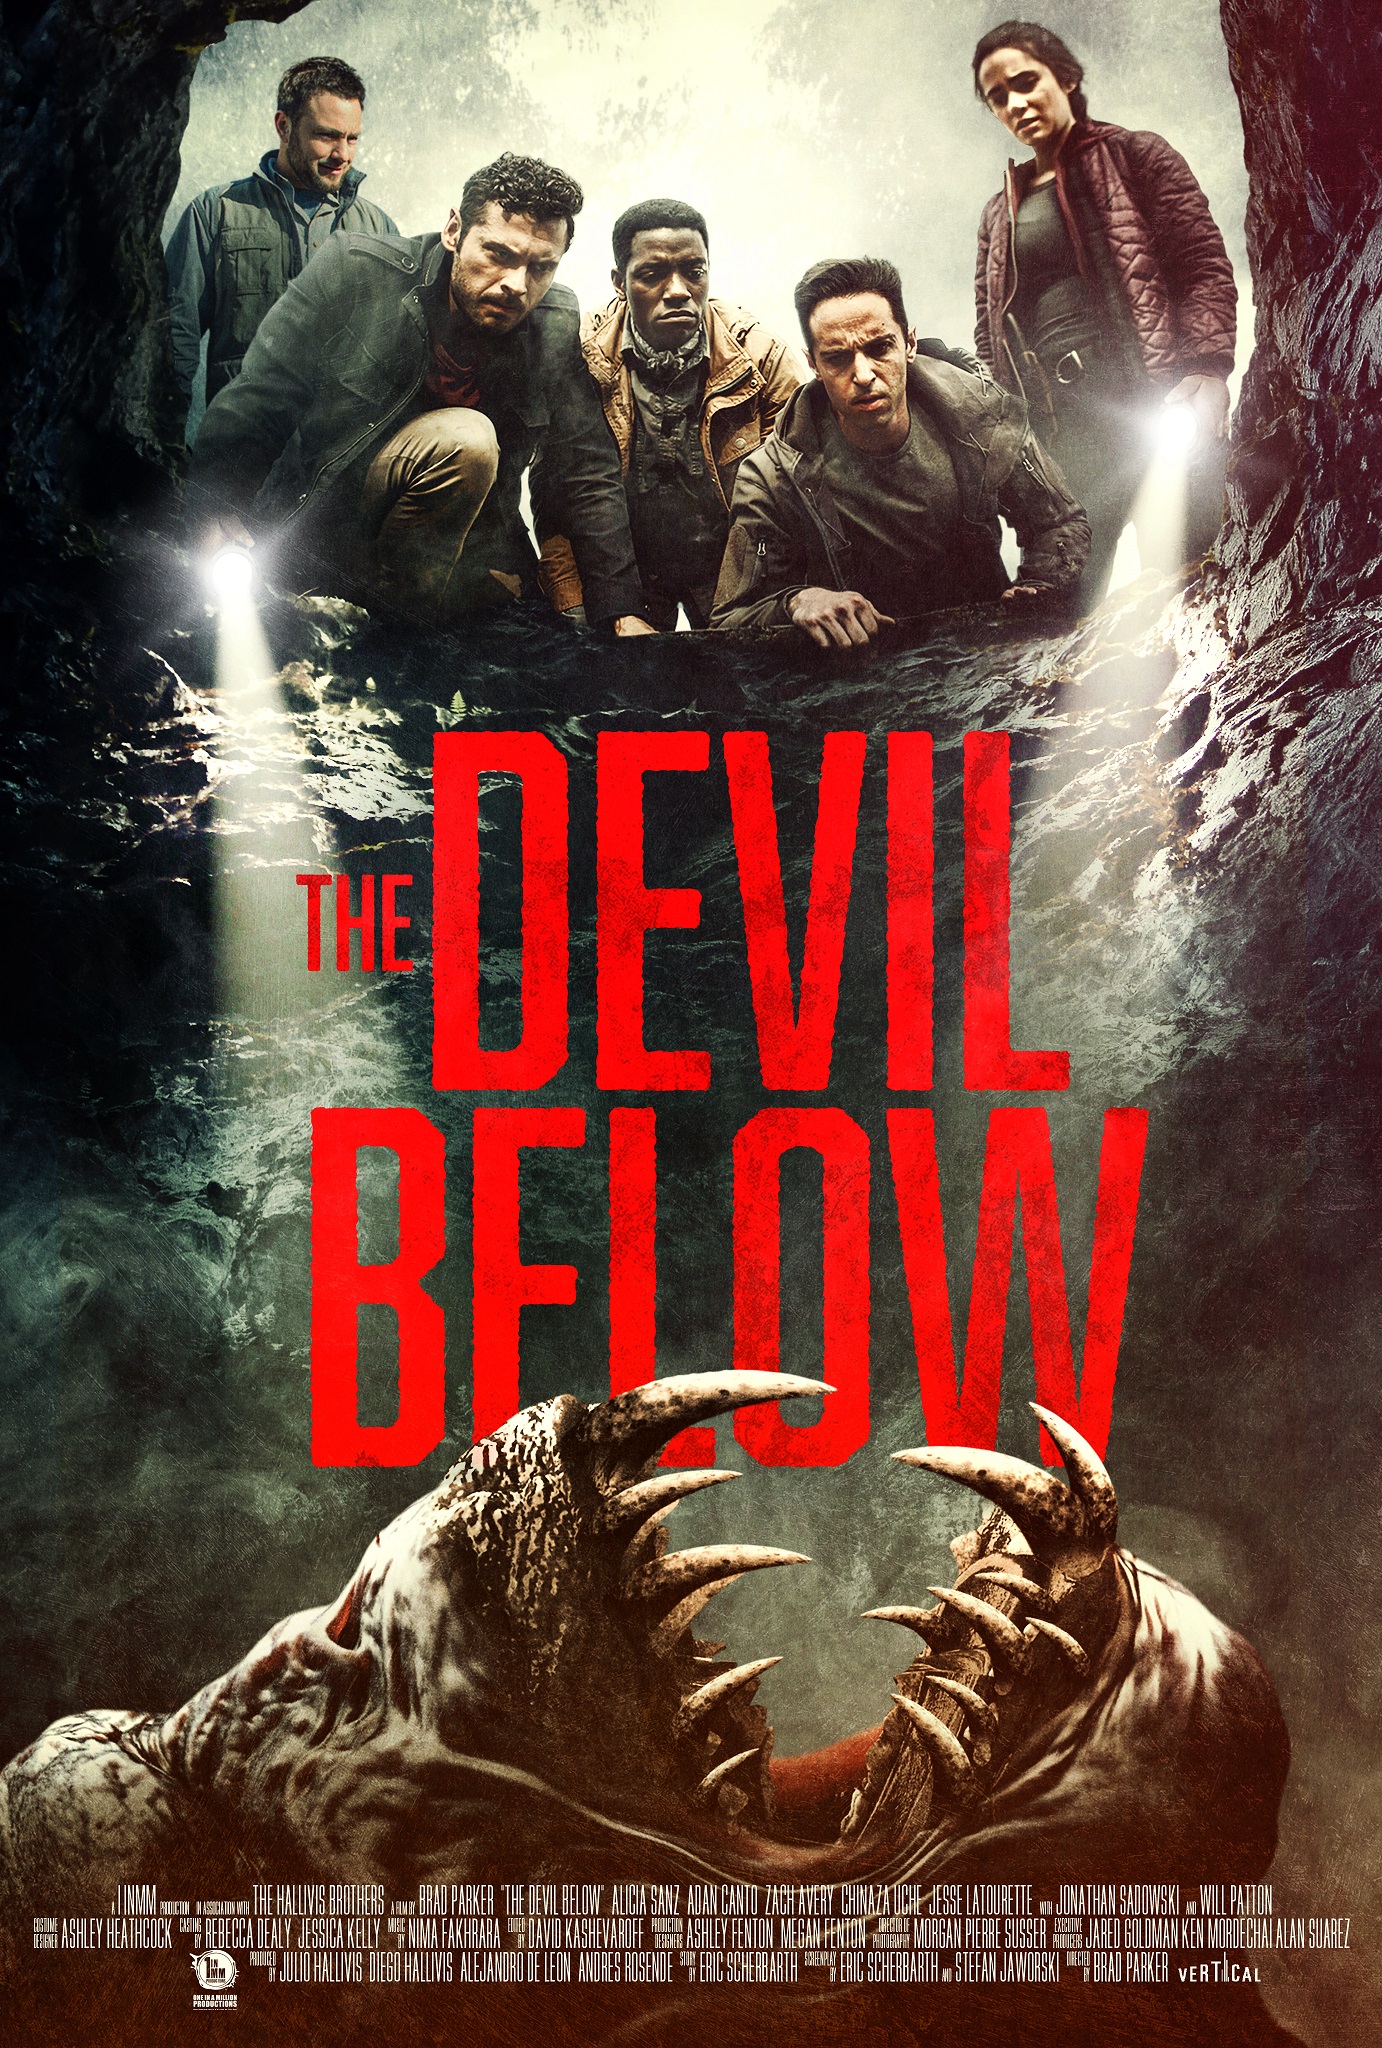 The Devil Below - Teaser Poster